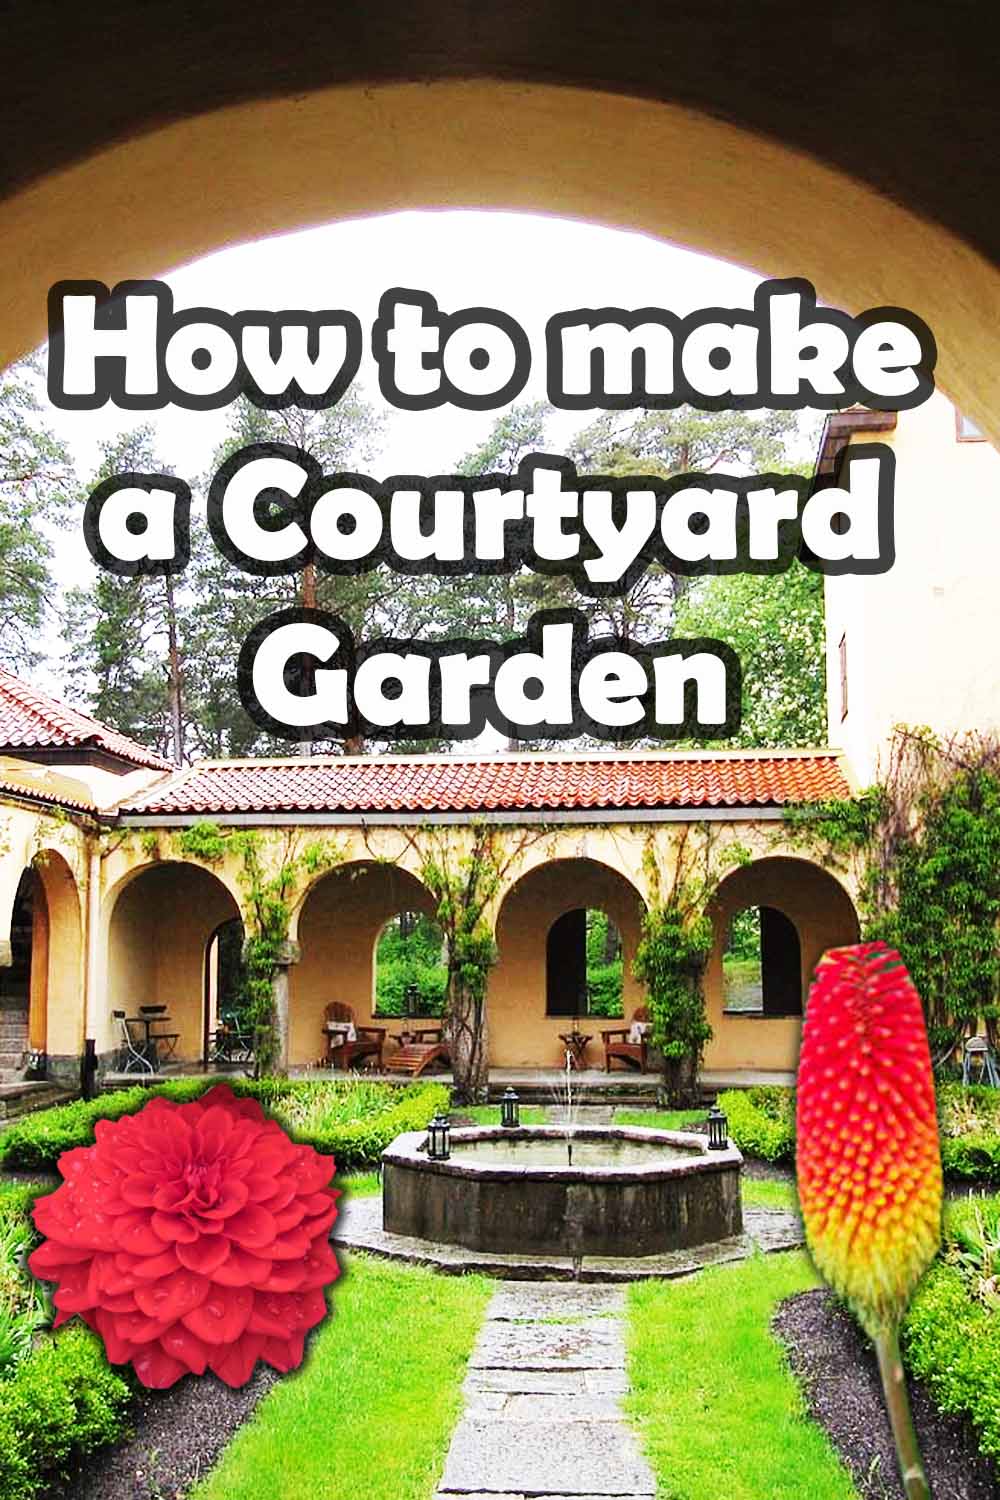 How to make a Courtyard garden